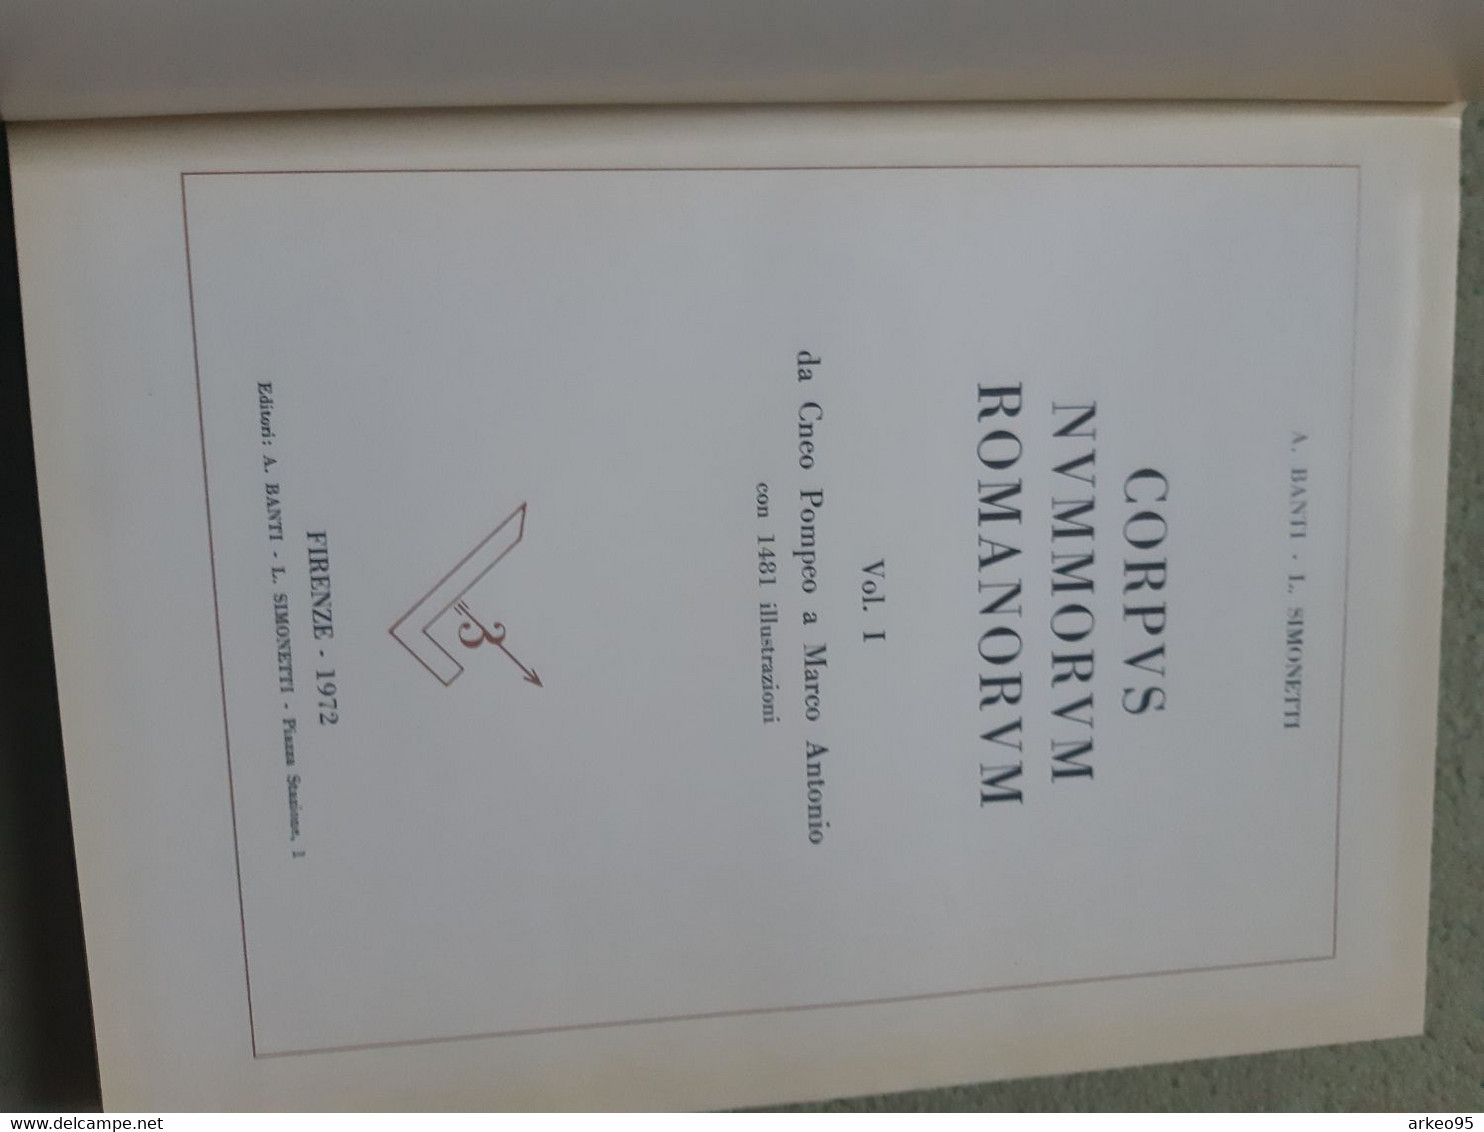 Banti Et Simonetti, Corpus Nommorum Romanorum Volume 1 De Pompée à Marc-Antoine, 1972 - Livres & Logiciels